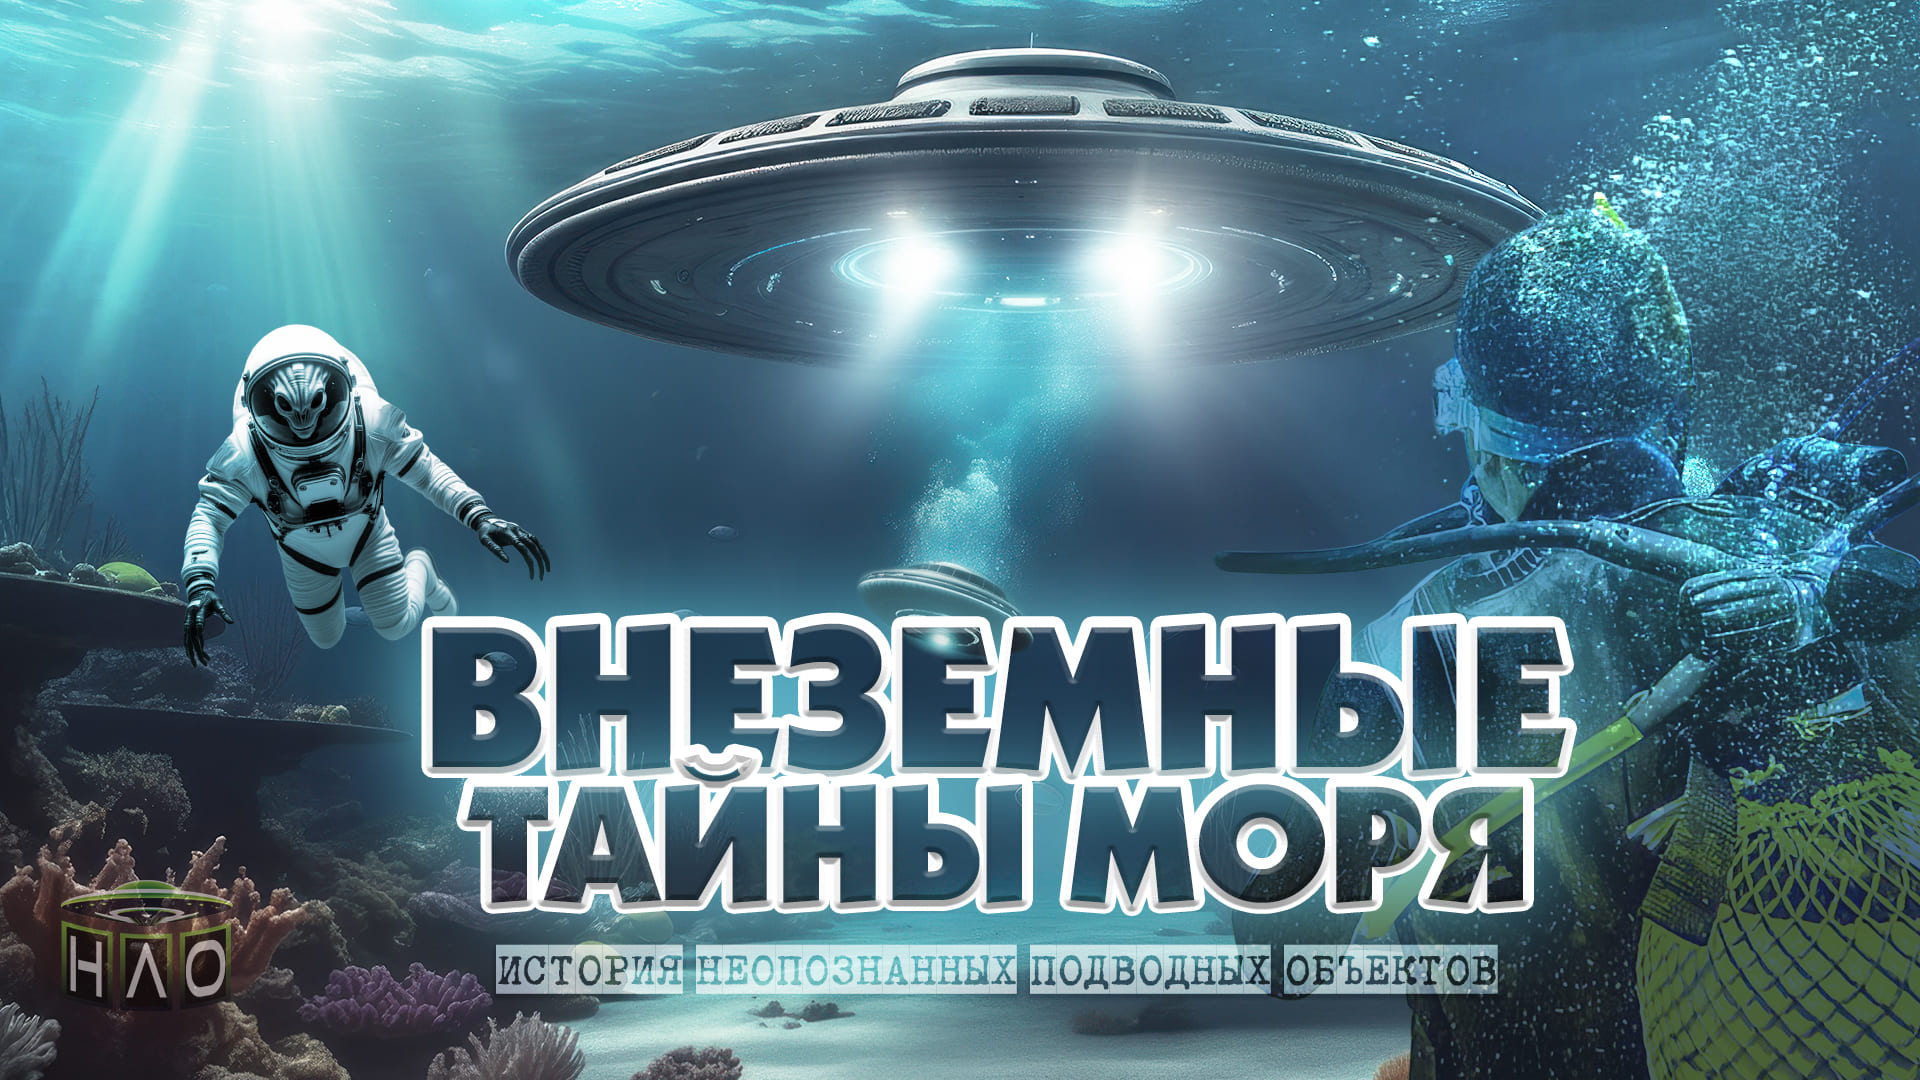 Инопланетяне, СУЩЕСТВУЮТ! Мы ДОКАЖЕМ! Тайная база НЛО находится под водой! ФАКТЫ и доказательства!